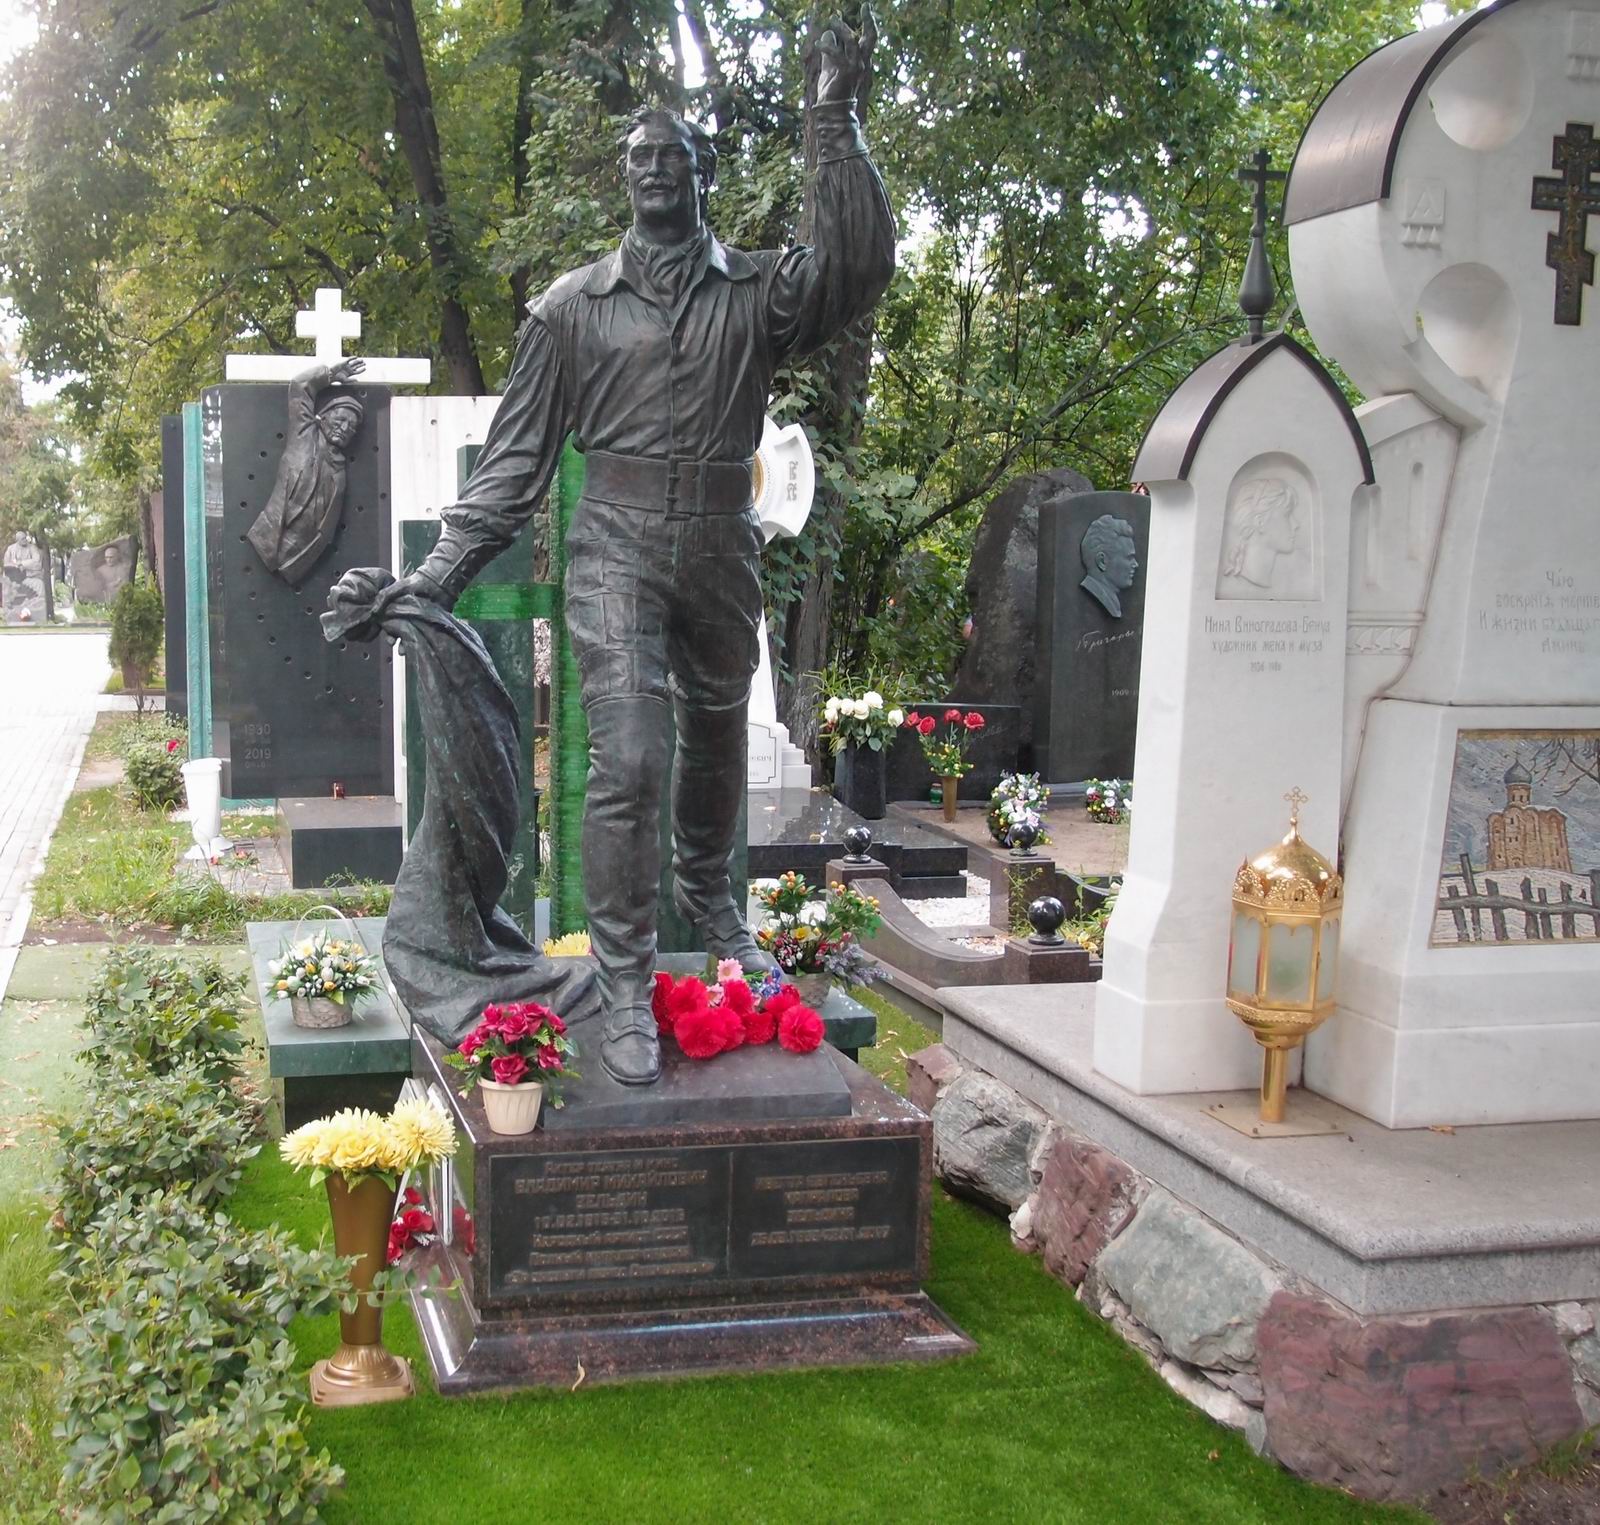 Памятник на могиле Зельдина В.М. (1915-2016), ск. М.Малашенко, Д.Клавсуц, А.Шевченко, арх. Д.Бобылев, на Новодевичьем кладбище (5-33-11).